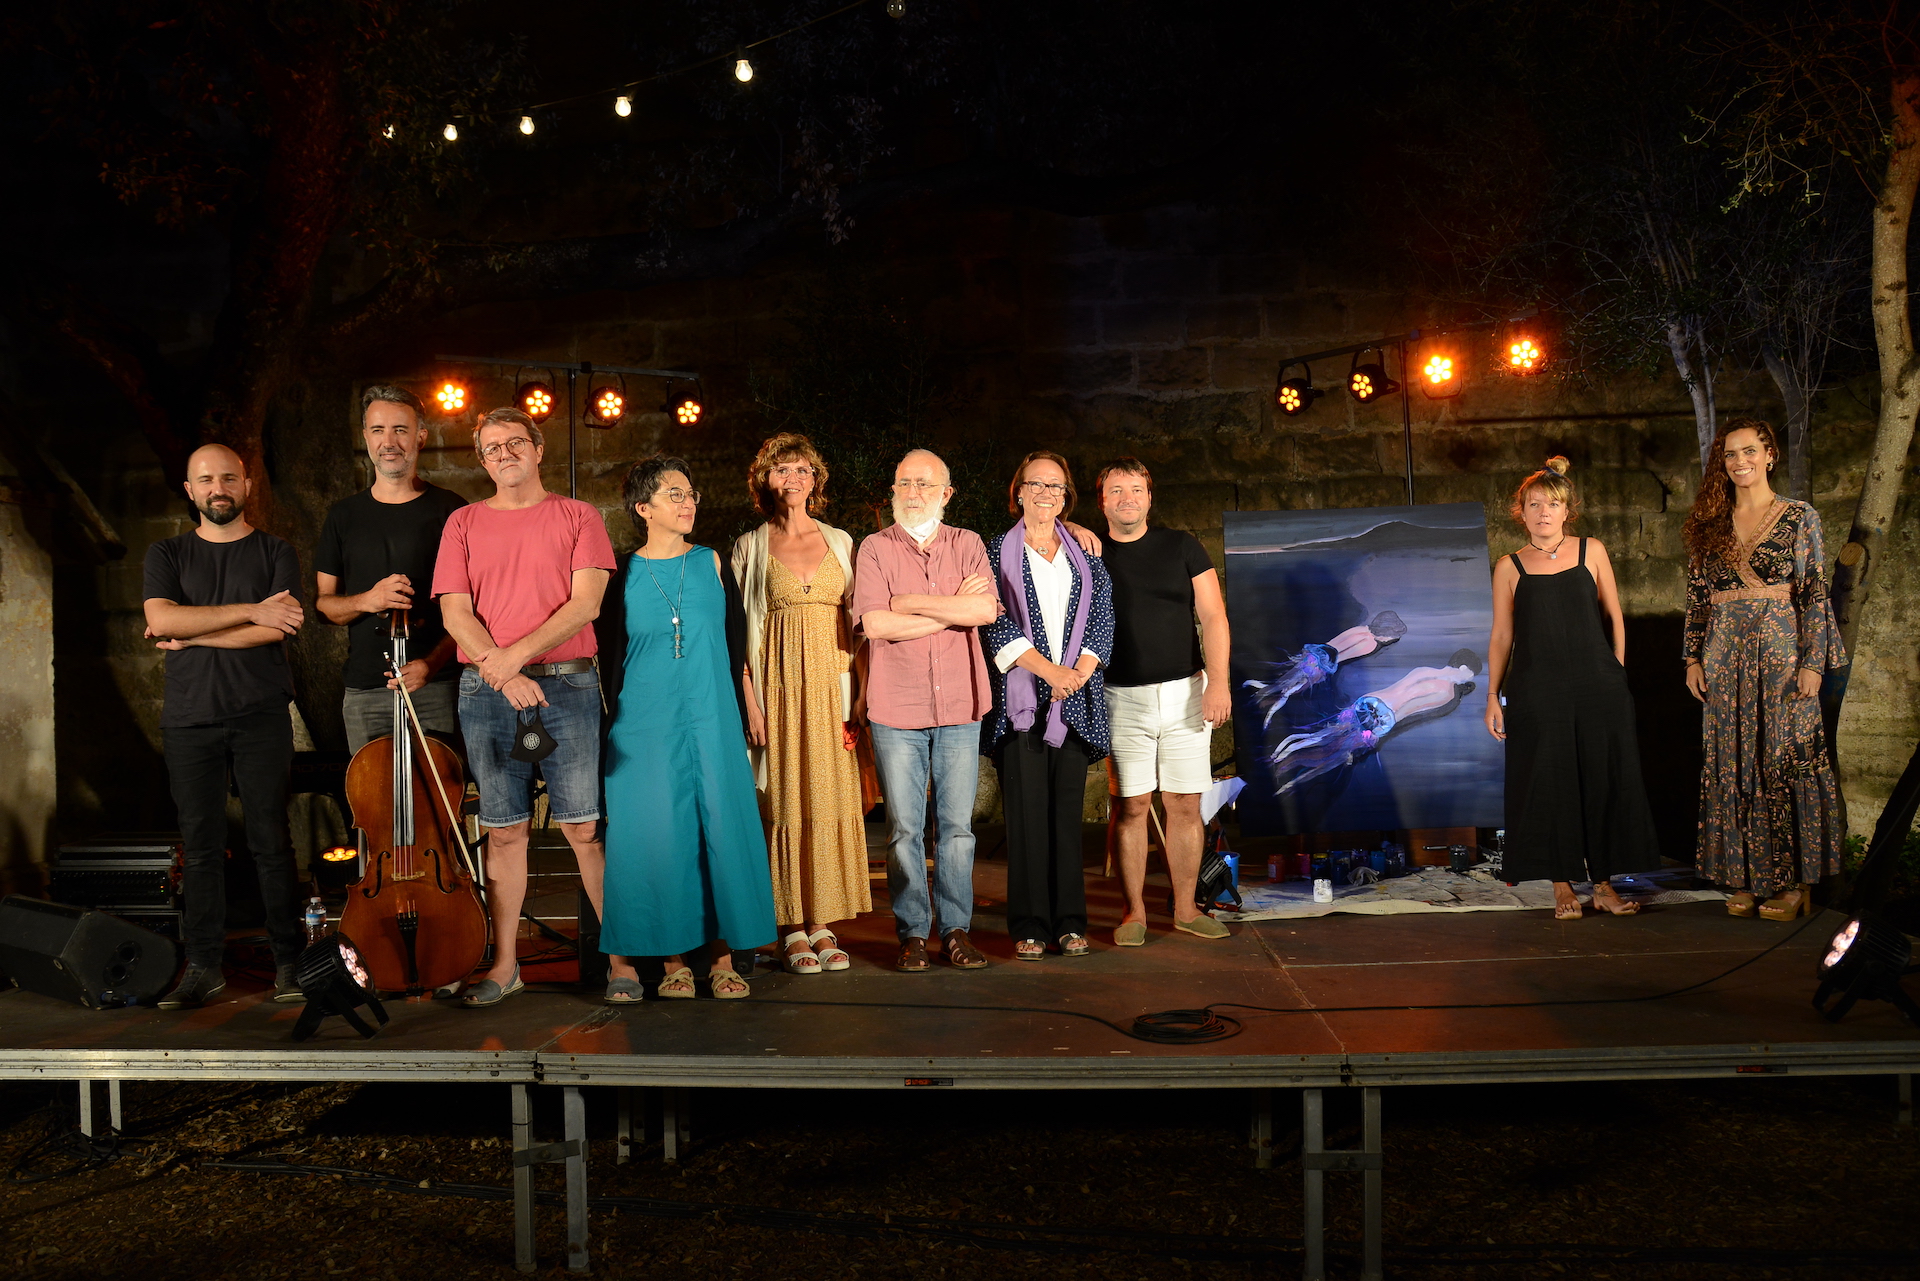 Els participants en la setzena edició del festival 'Illanvers'. (Fotografies: Prats i Camps)